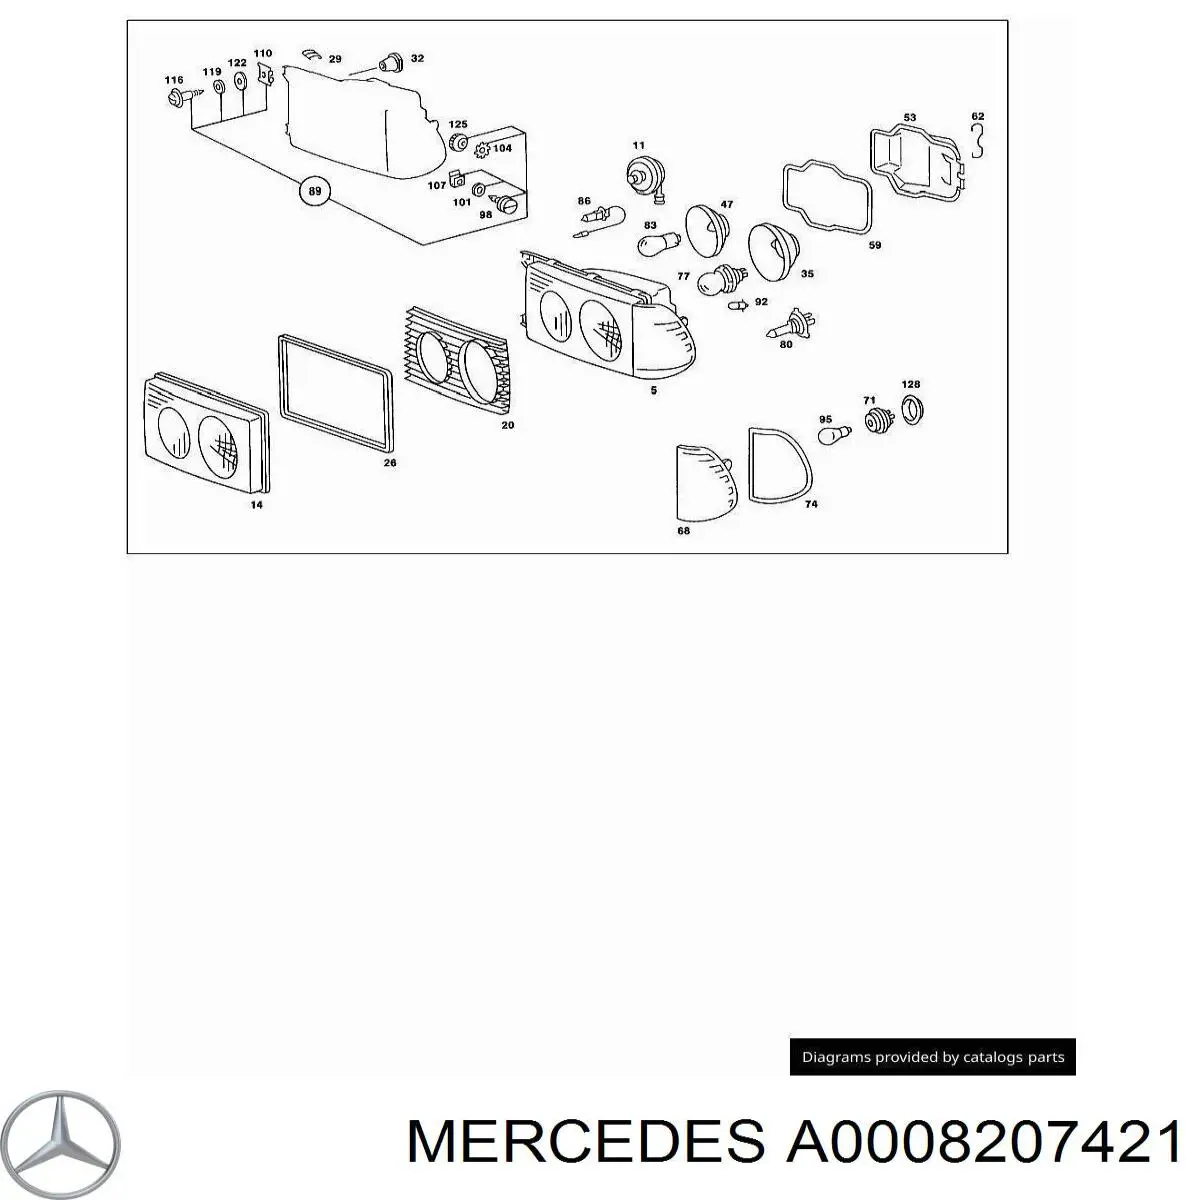 Intermitente derecho Mercedes E T123